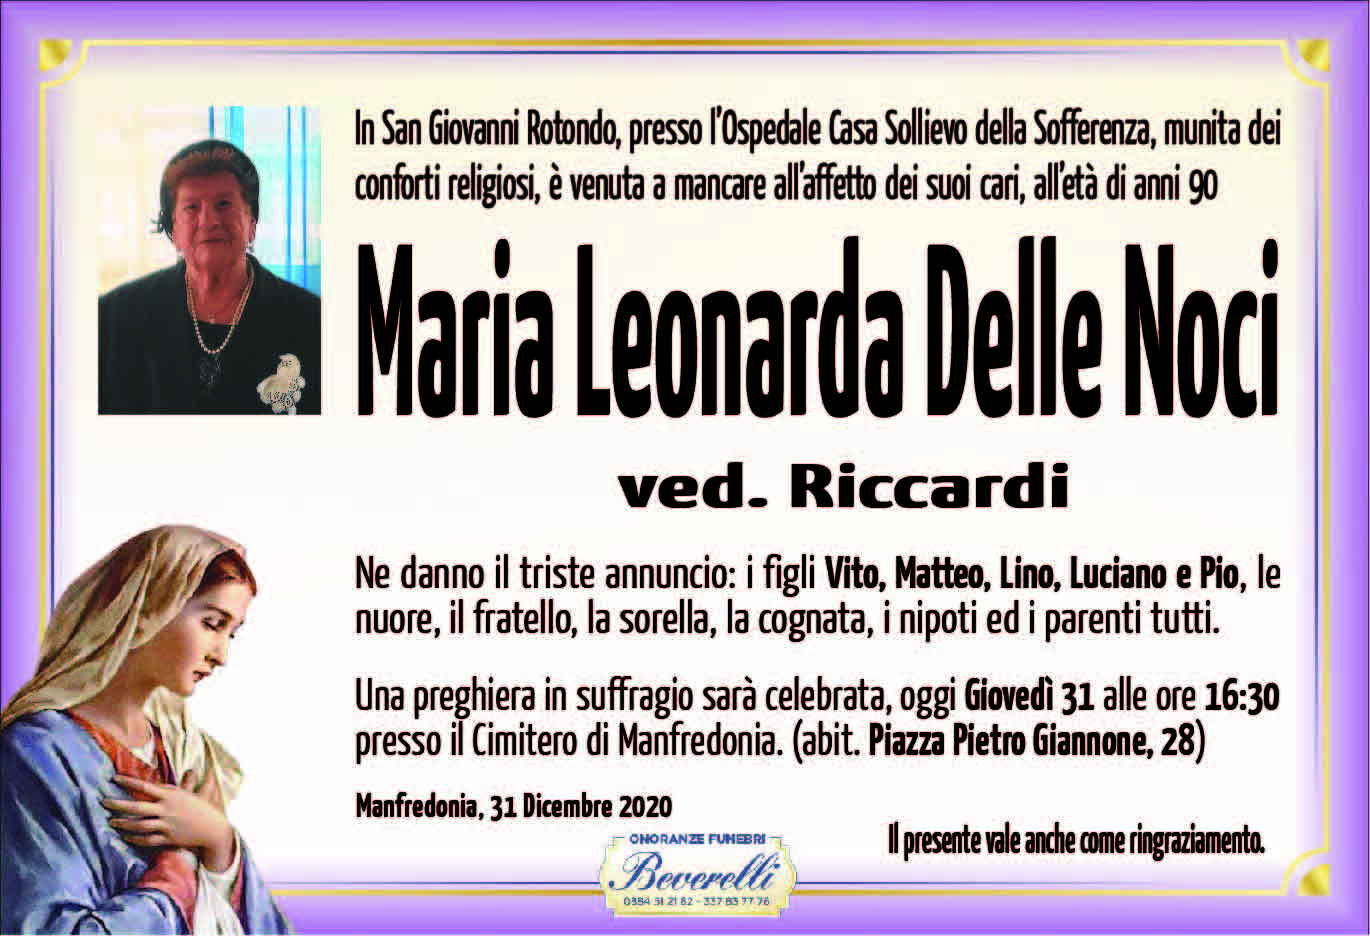 Maria Leonarda Delle Noci